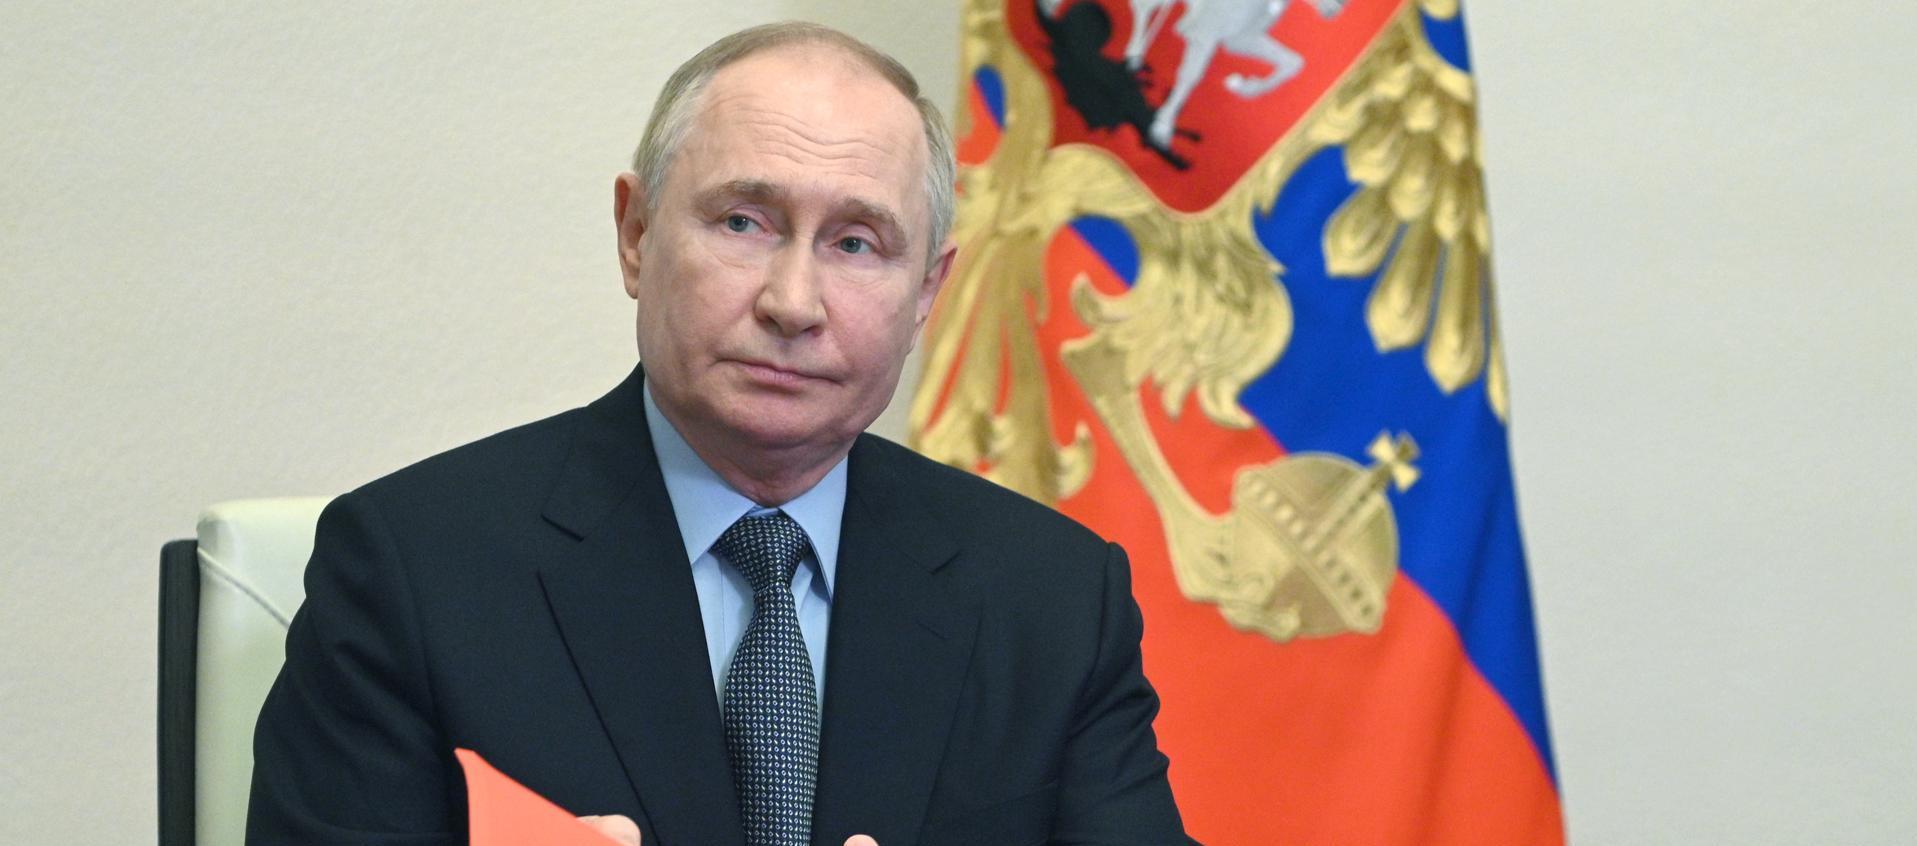 Vladímir Putin, Presidente de Rusia.